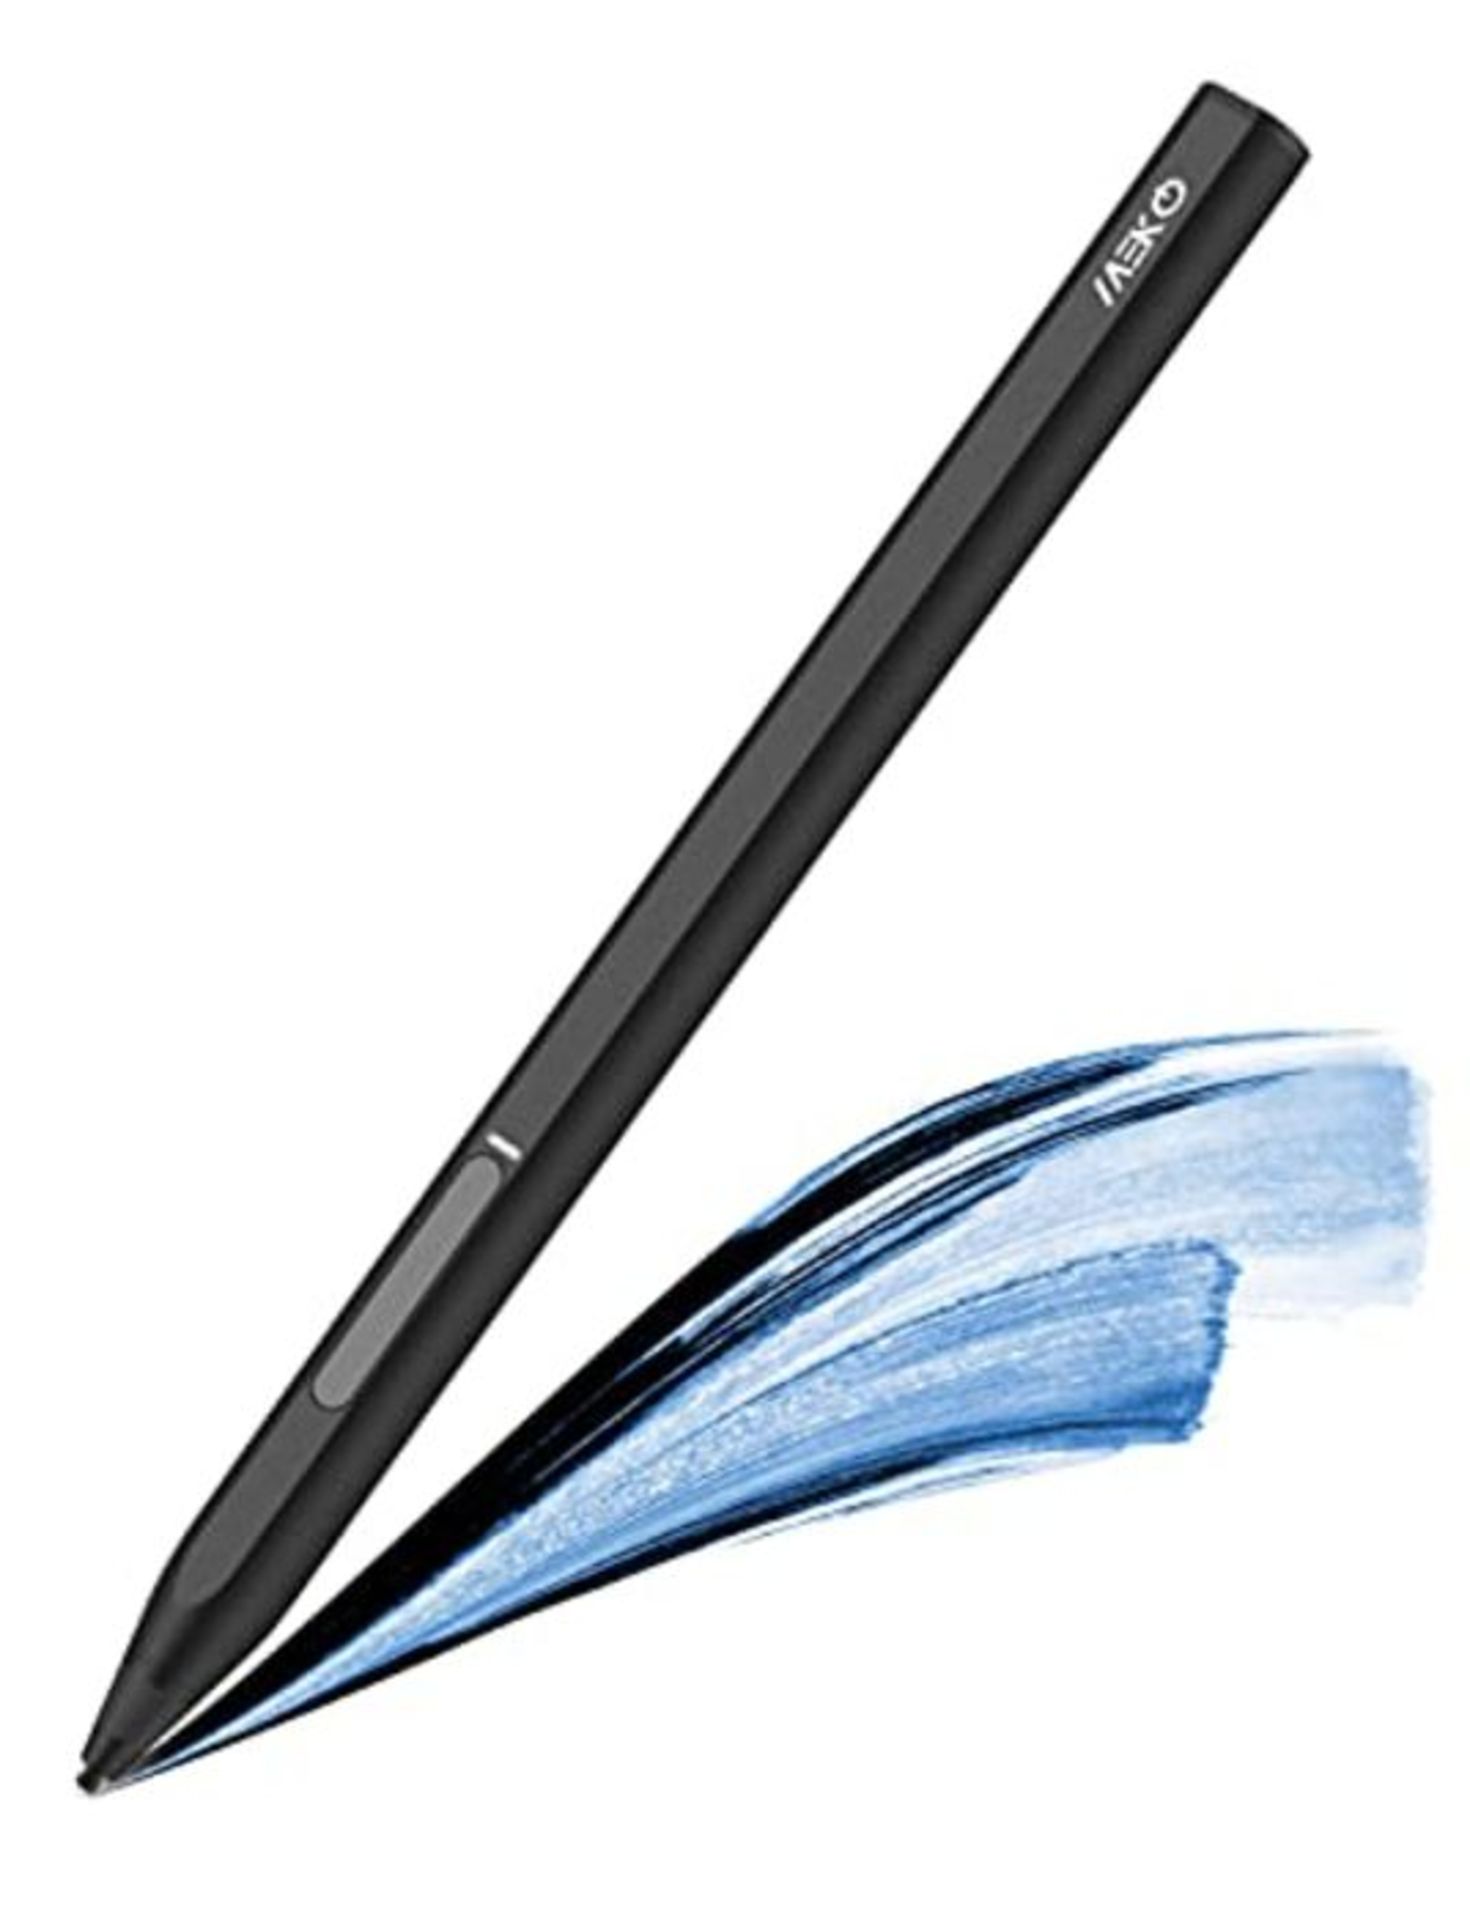 MEKO Stylus Pen fÃ¼r Microsoft Surface mit Neigungsfunktion 4096 Druckstufen und Pal